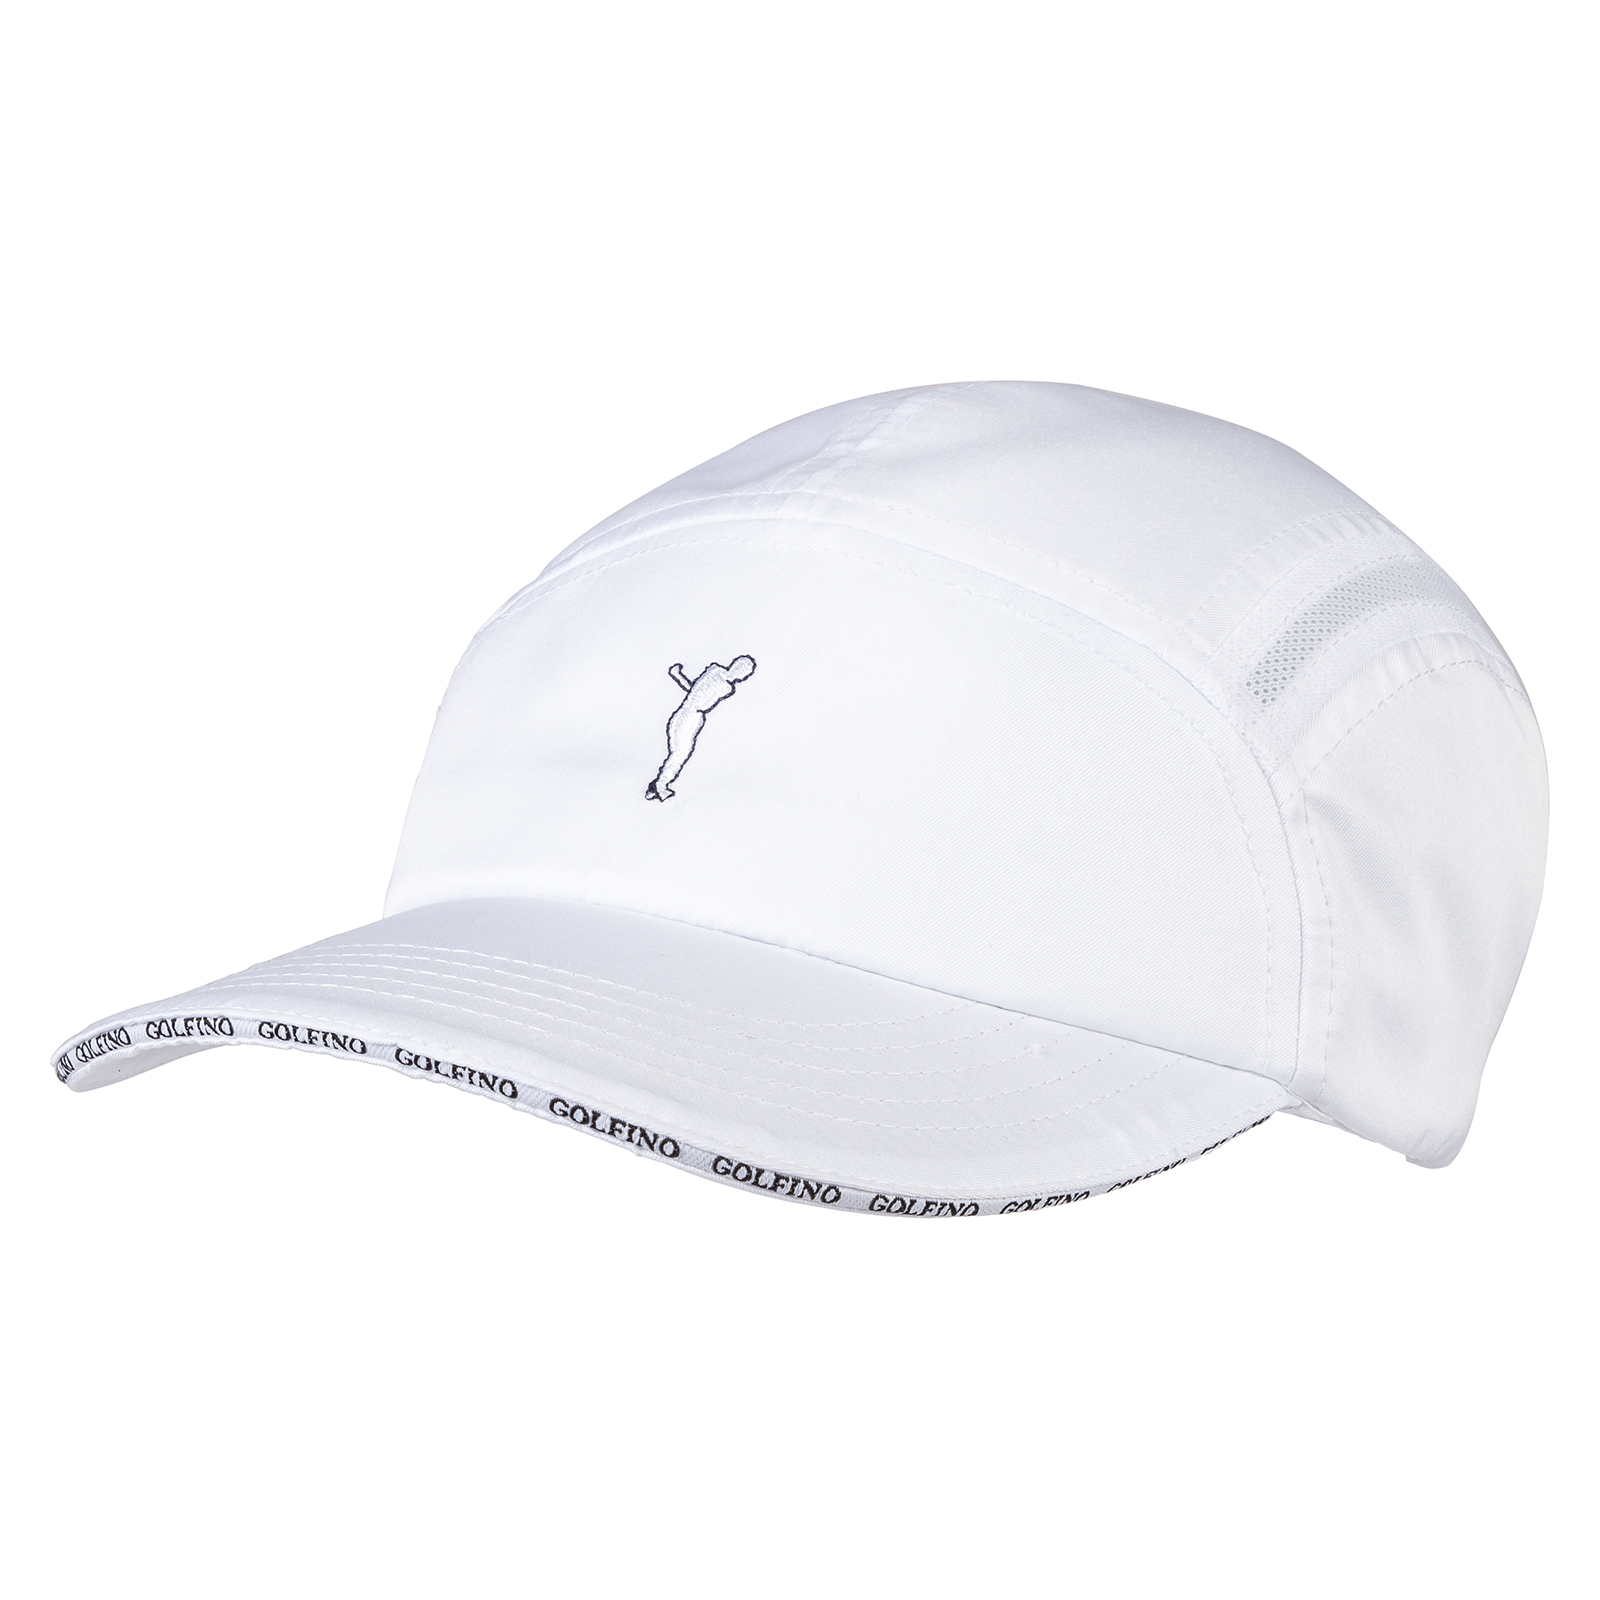 Men's lightweight golf cap with good breathing properties 